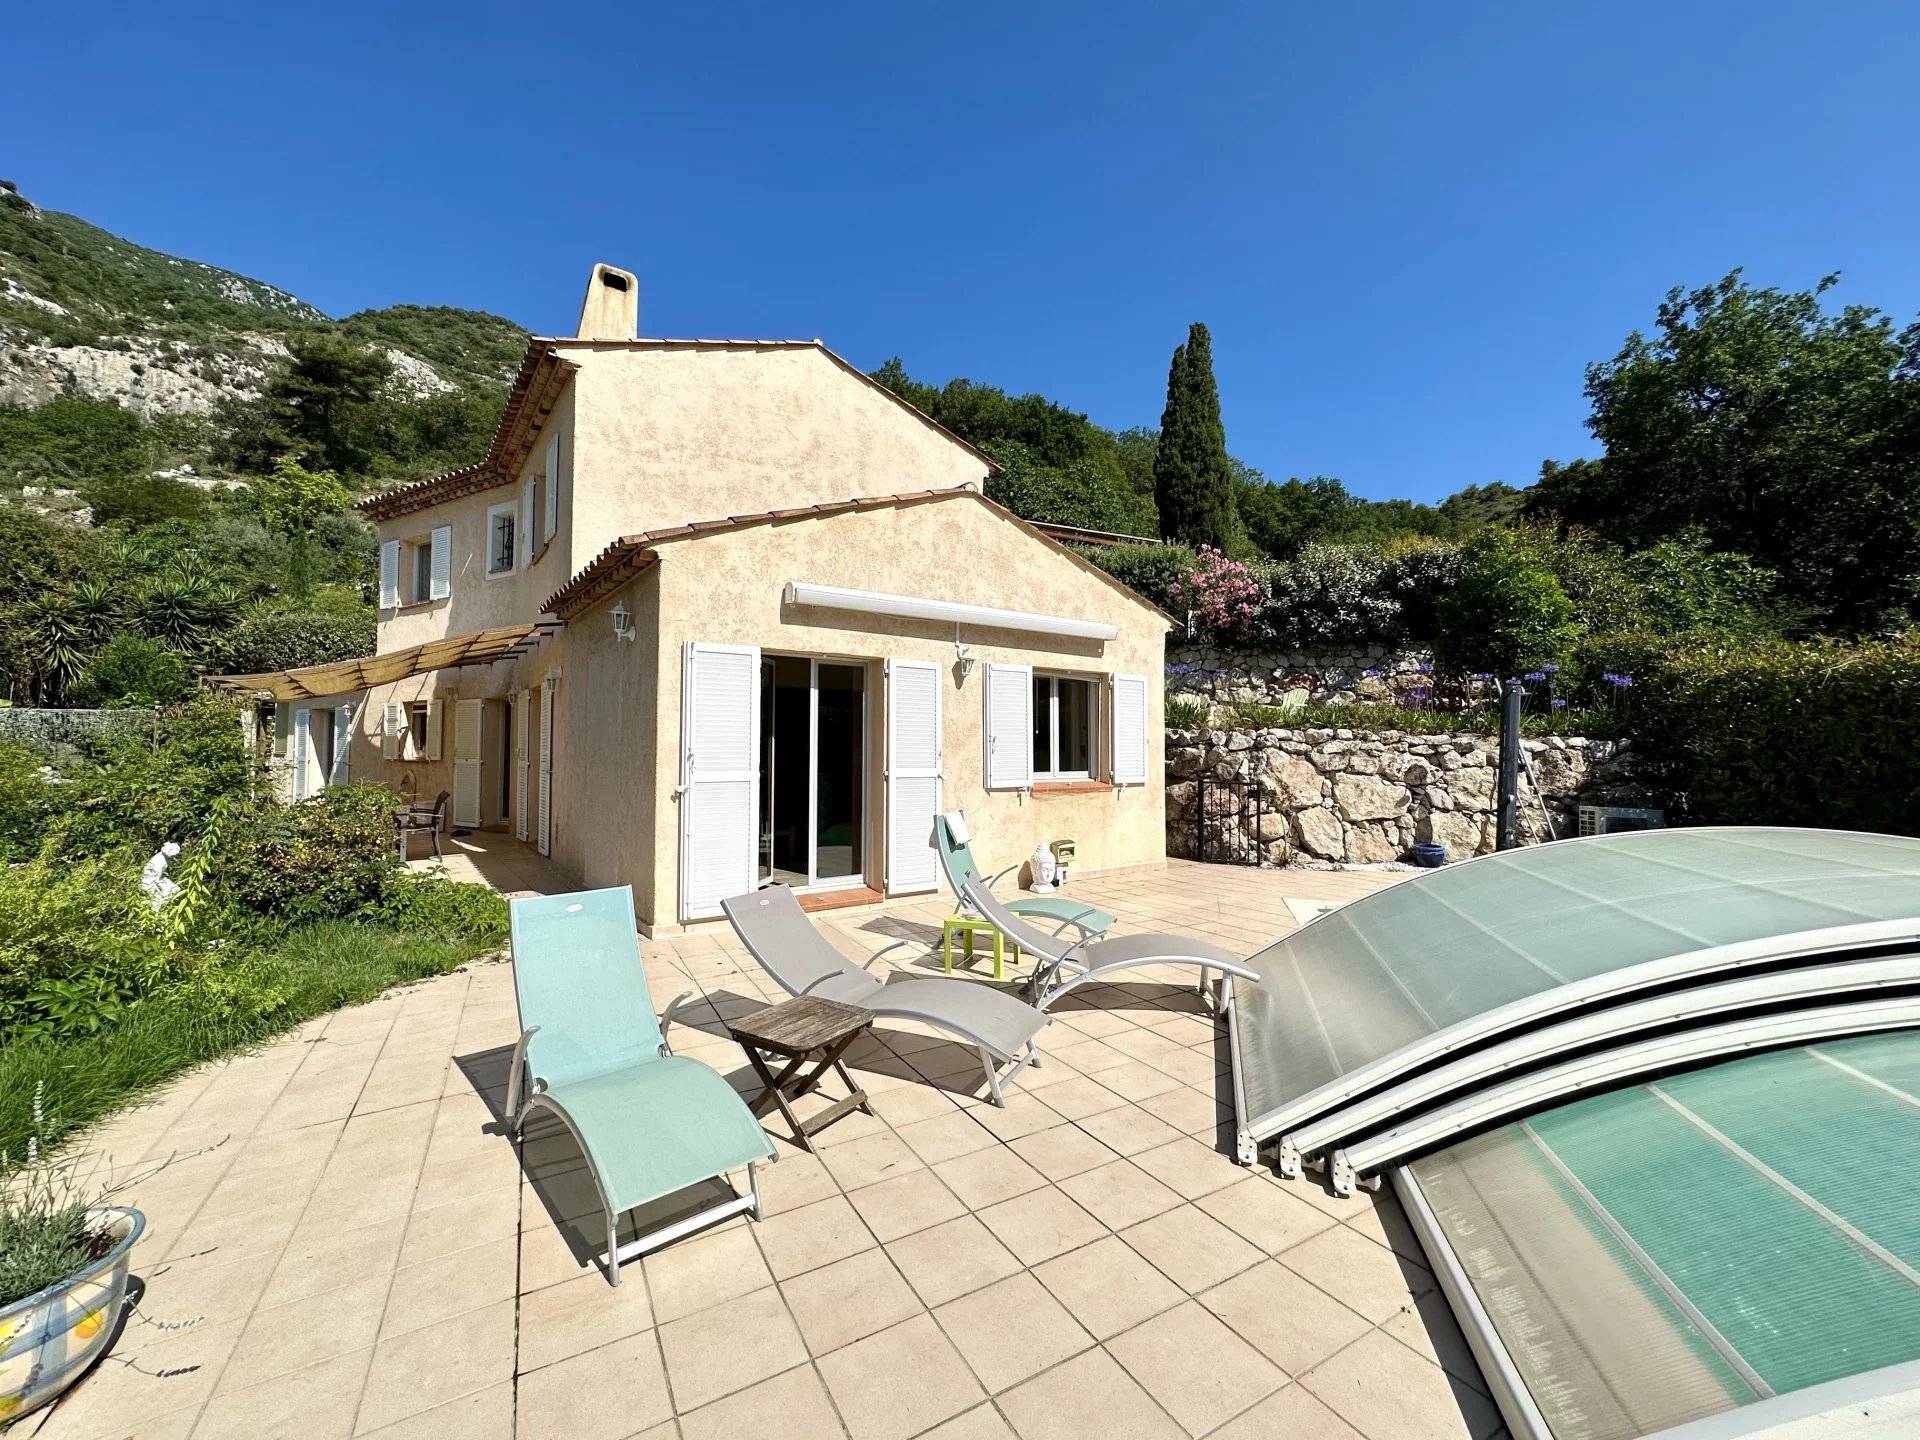 Vente Maison 200m² 5 Pièces à Roquebrune-Cap-Martin (06190) - Sud Rivages